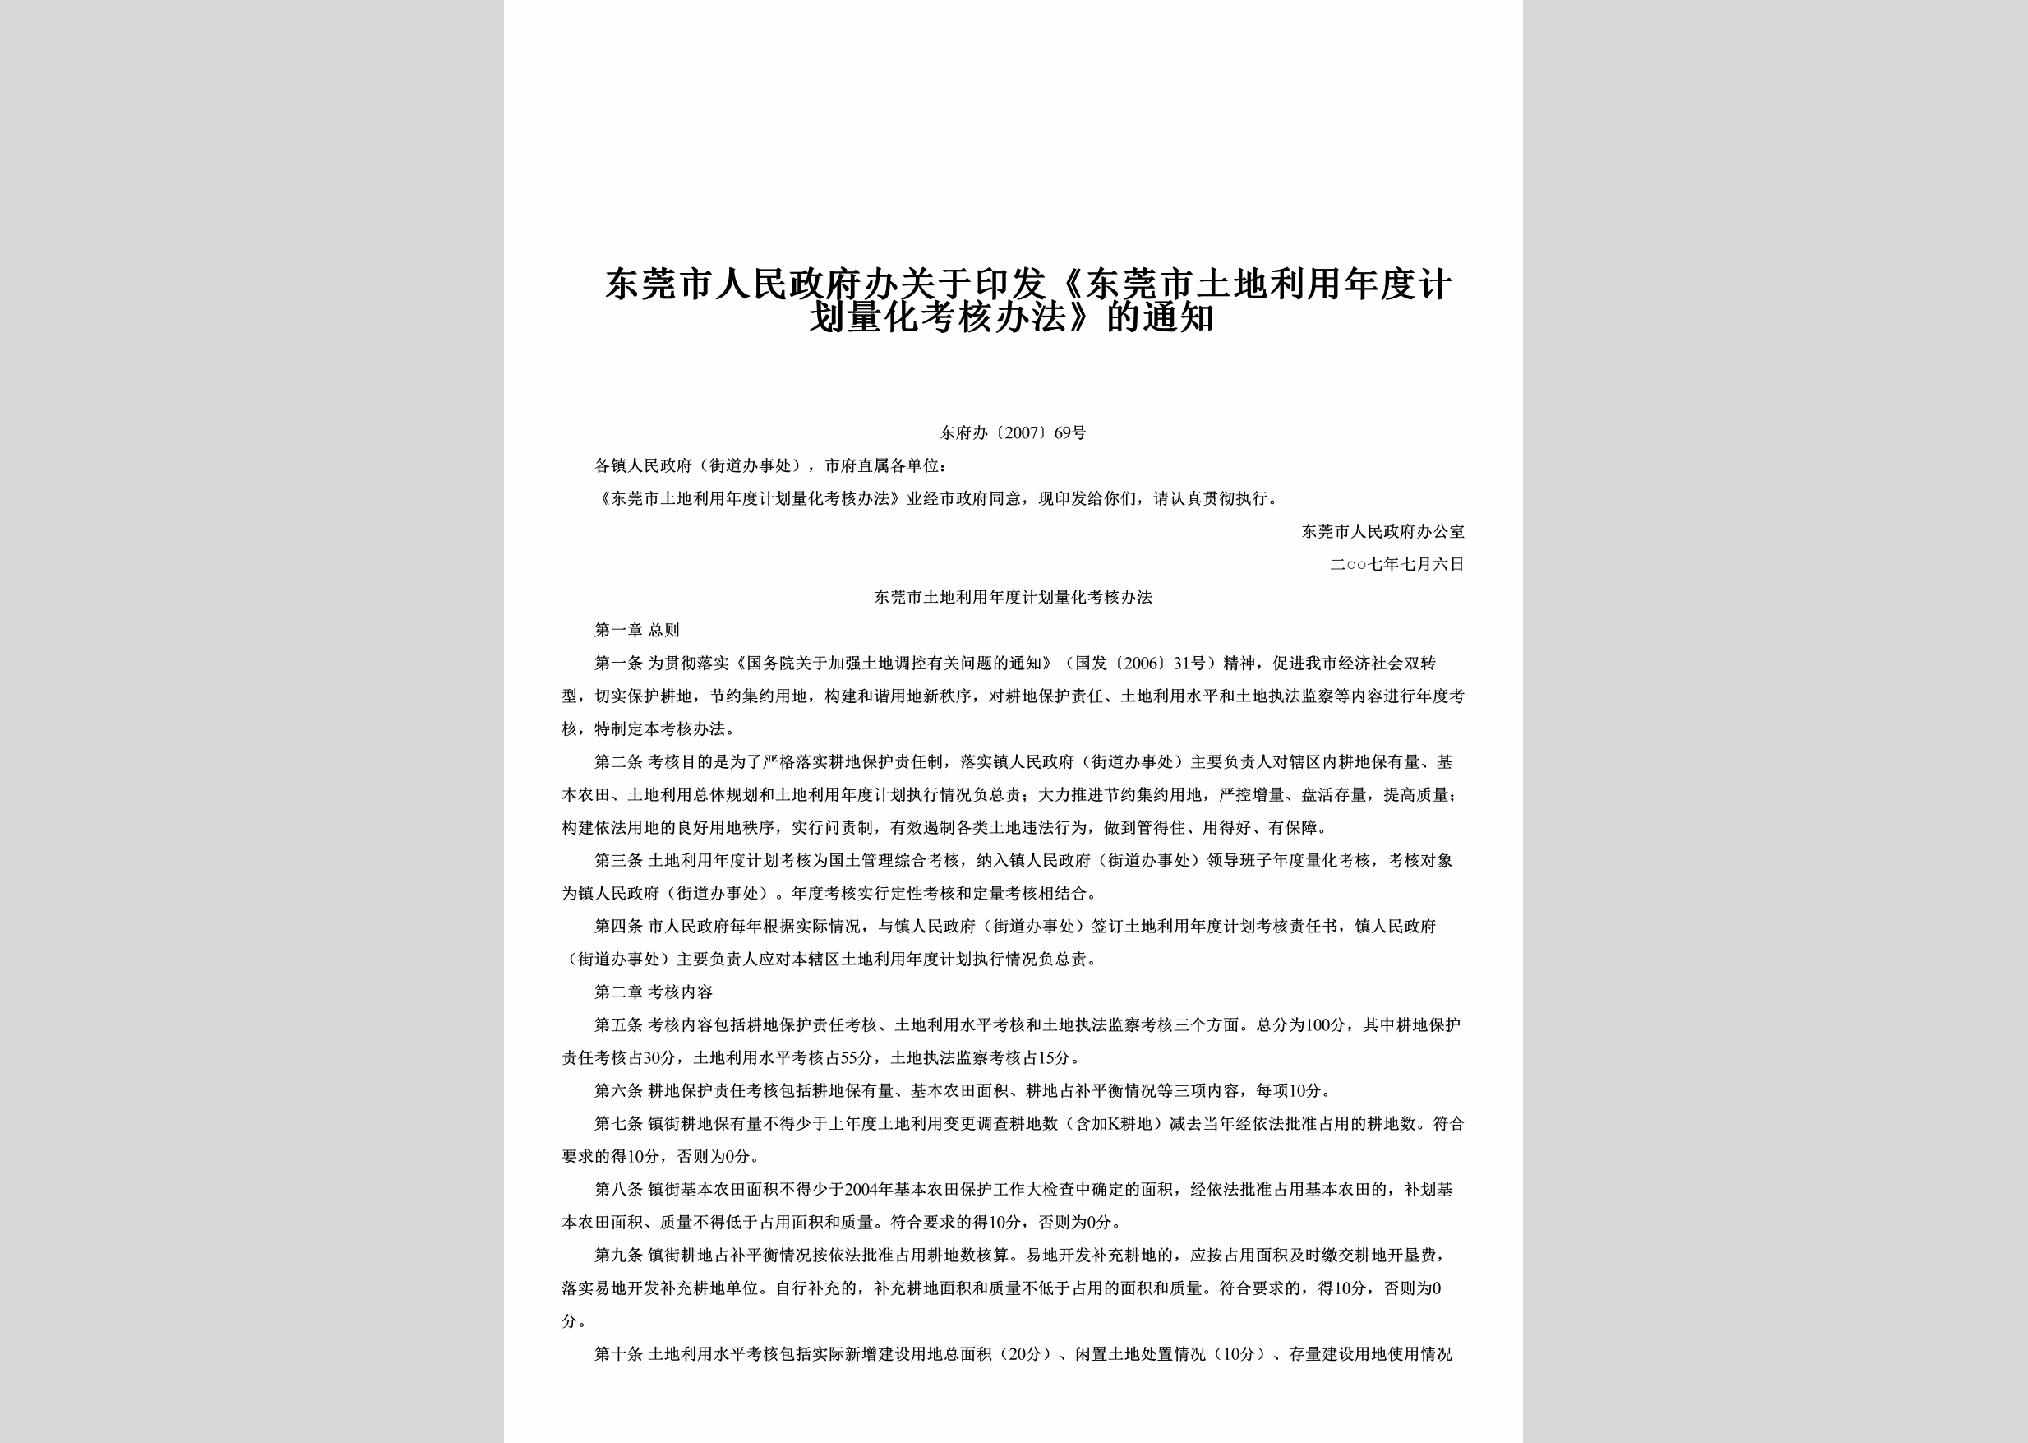 东府办[2007]69号：关于印发《东莞市土地利用年度计划量化考核办法》的通知